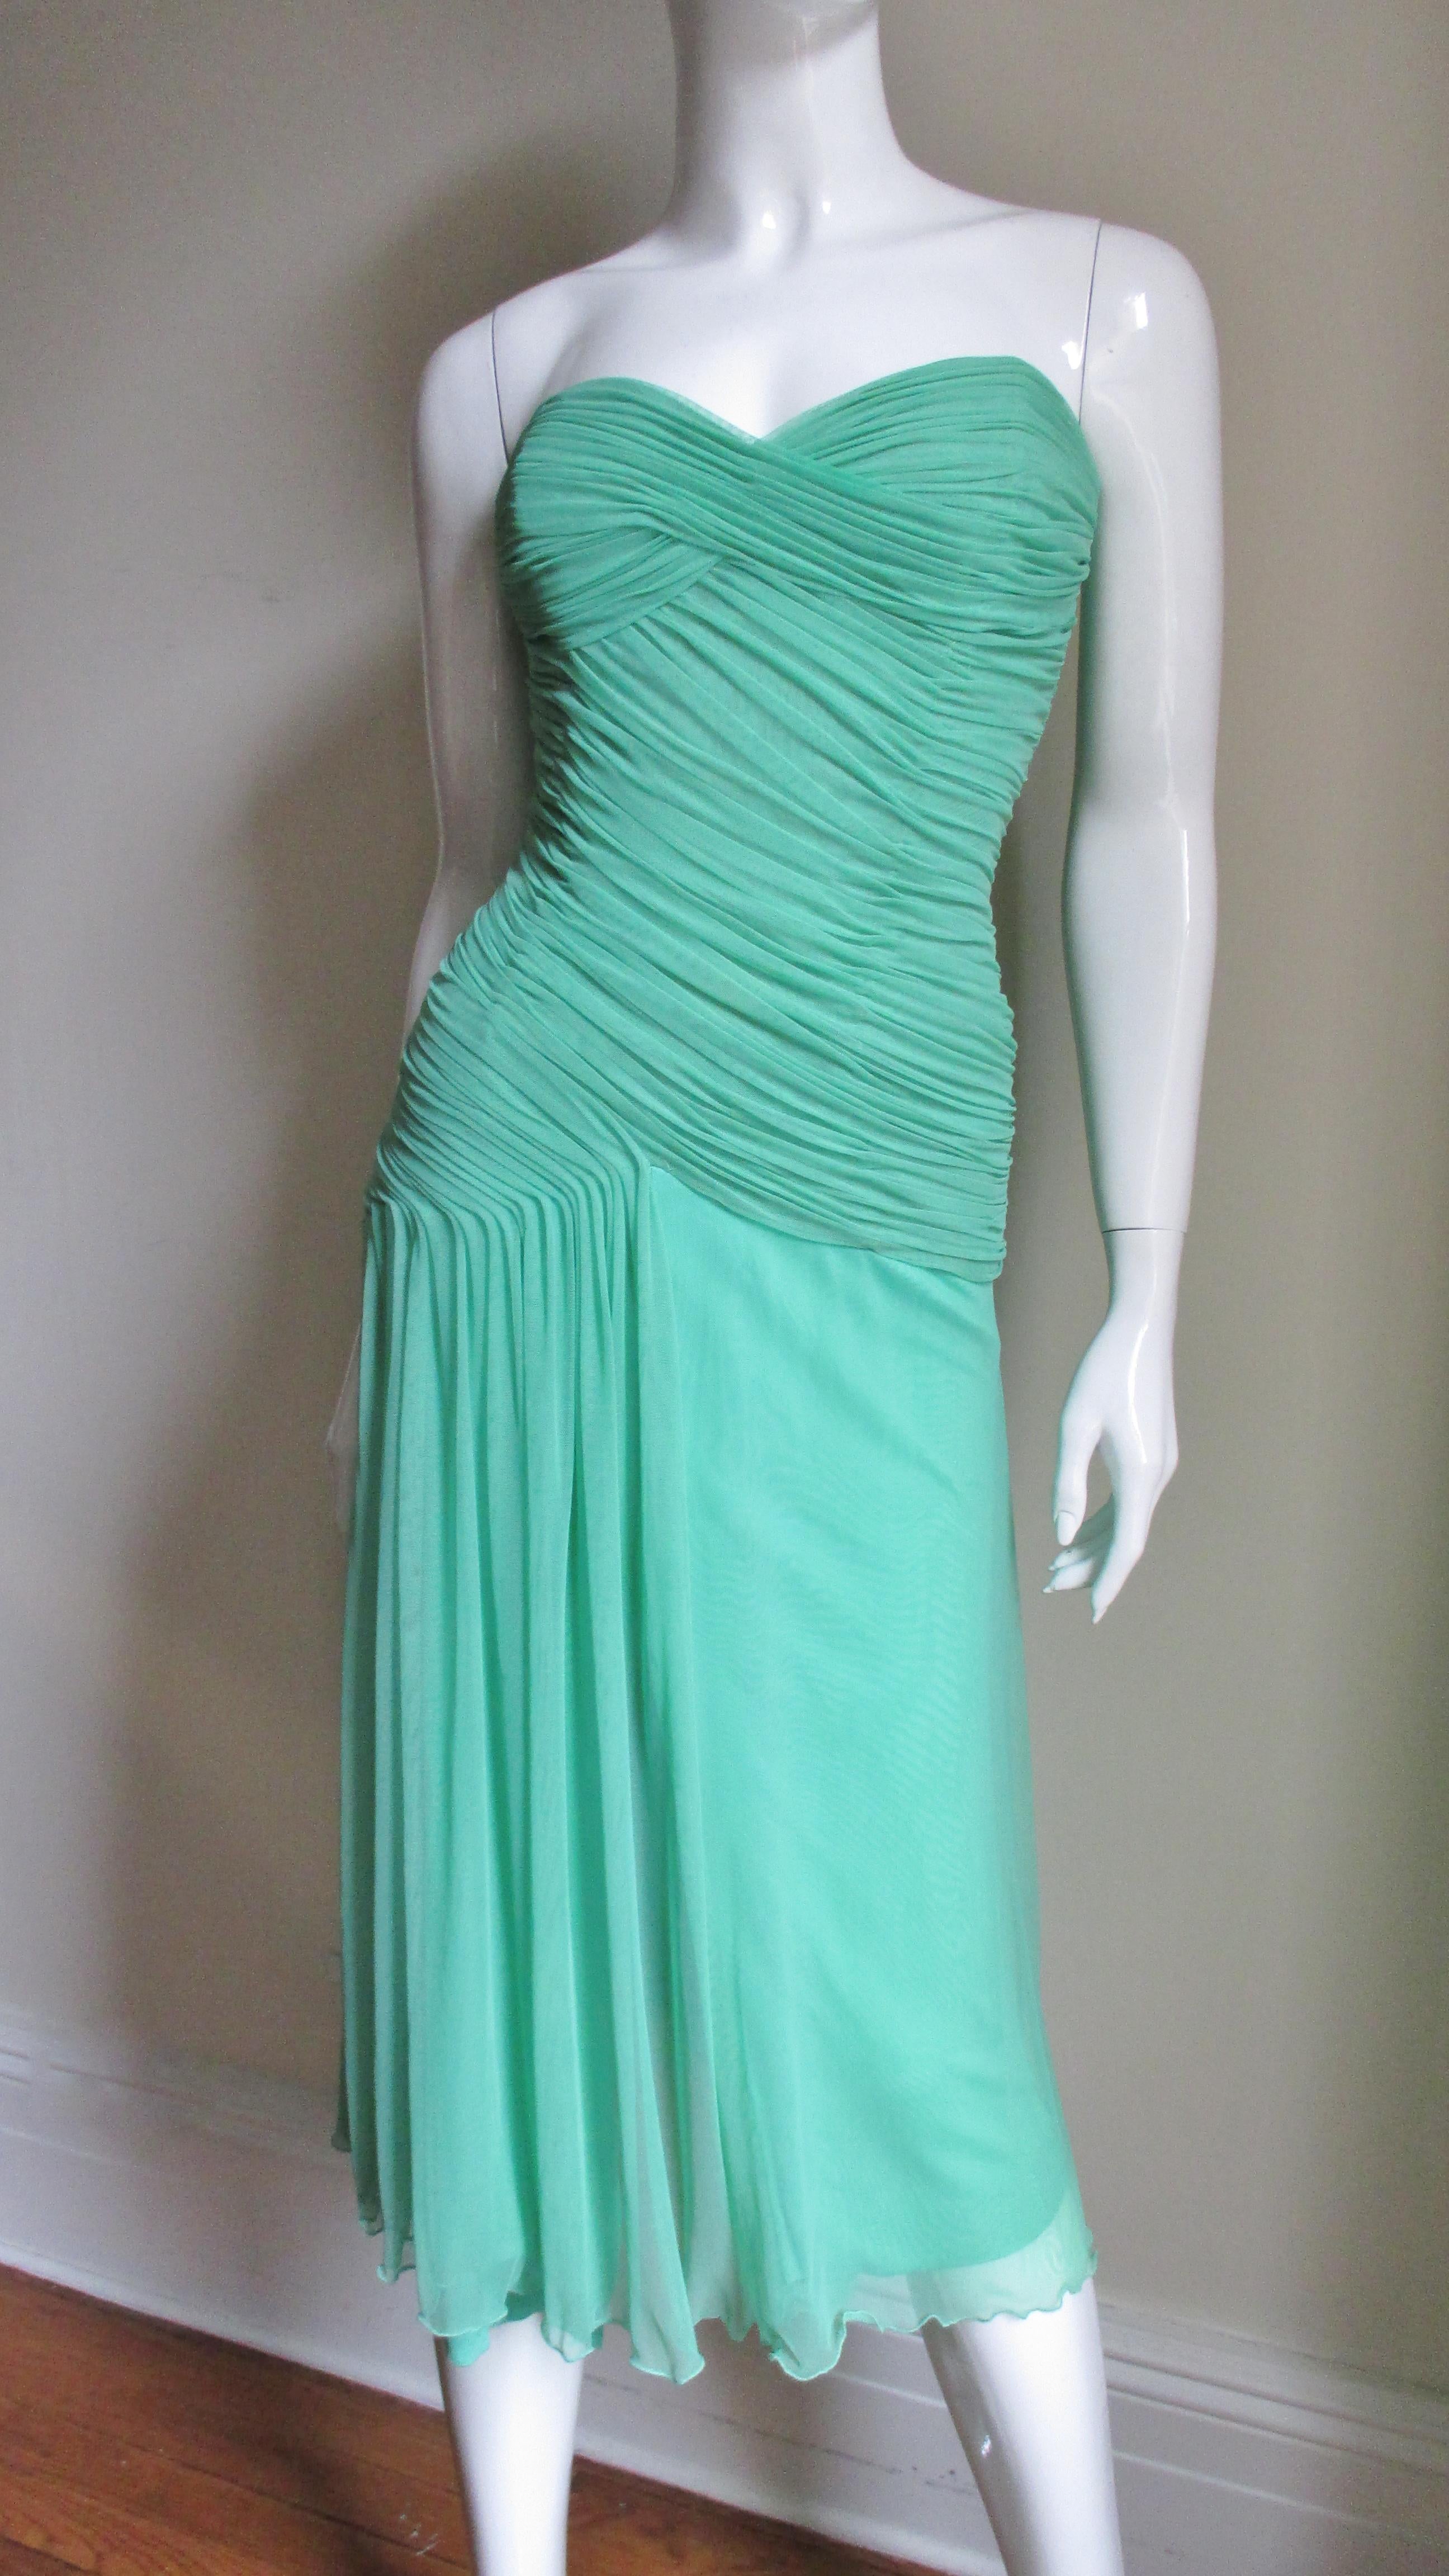 Une fabuleuse robe en soie stretch de Vicky Tiel Couture dans une belle nuance de vert menthe vif.  Le corsage est de type corset avec des fronces qui s'entrecroisent de façon flatteuse autour de la poitrine, s'enroulent en biais autour de la taille